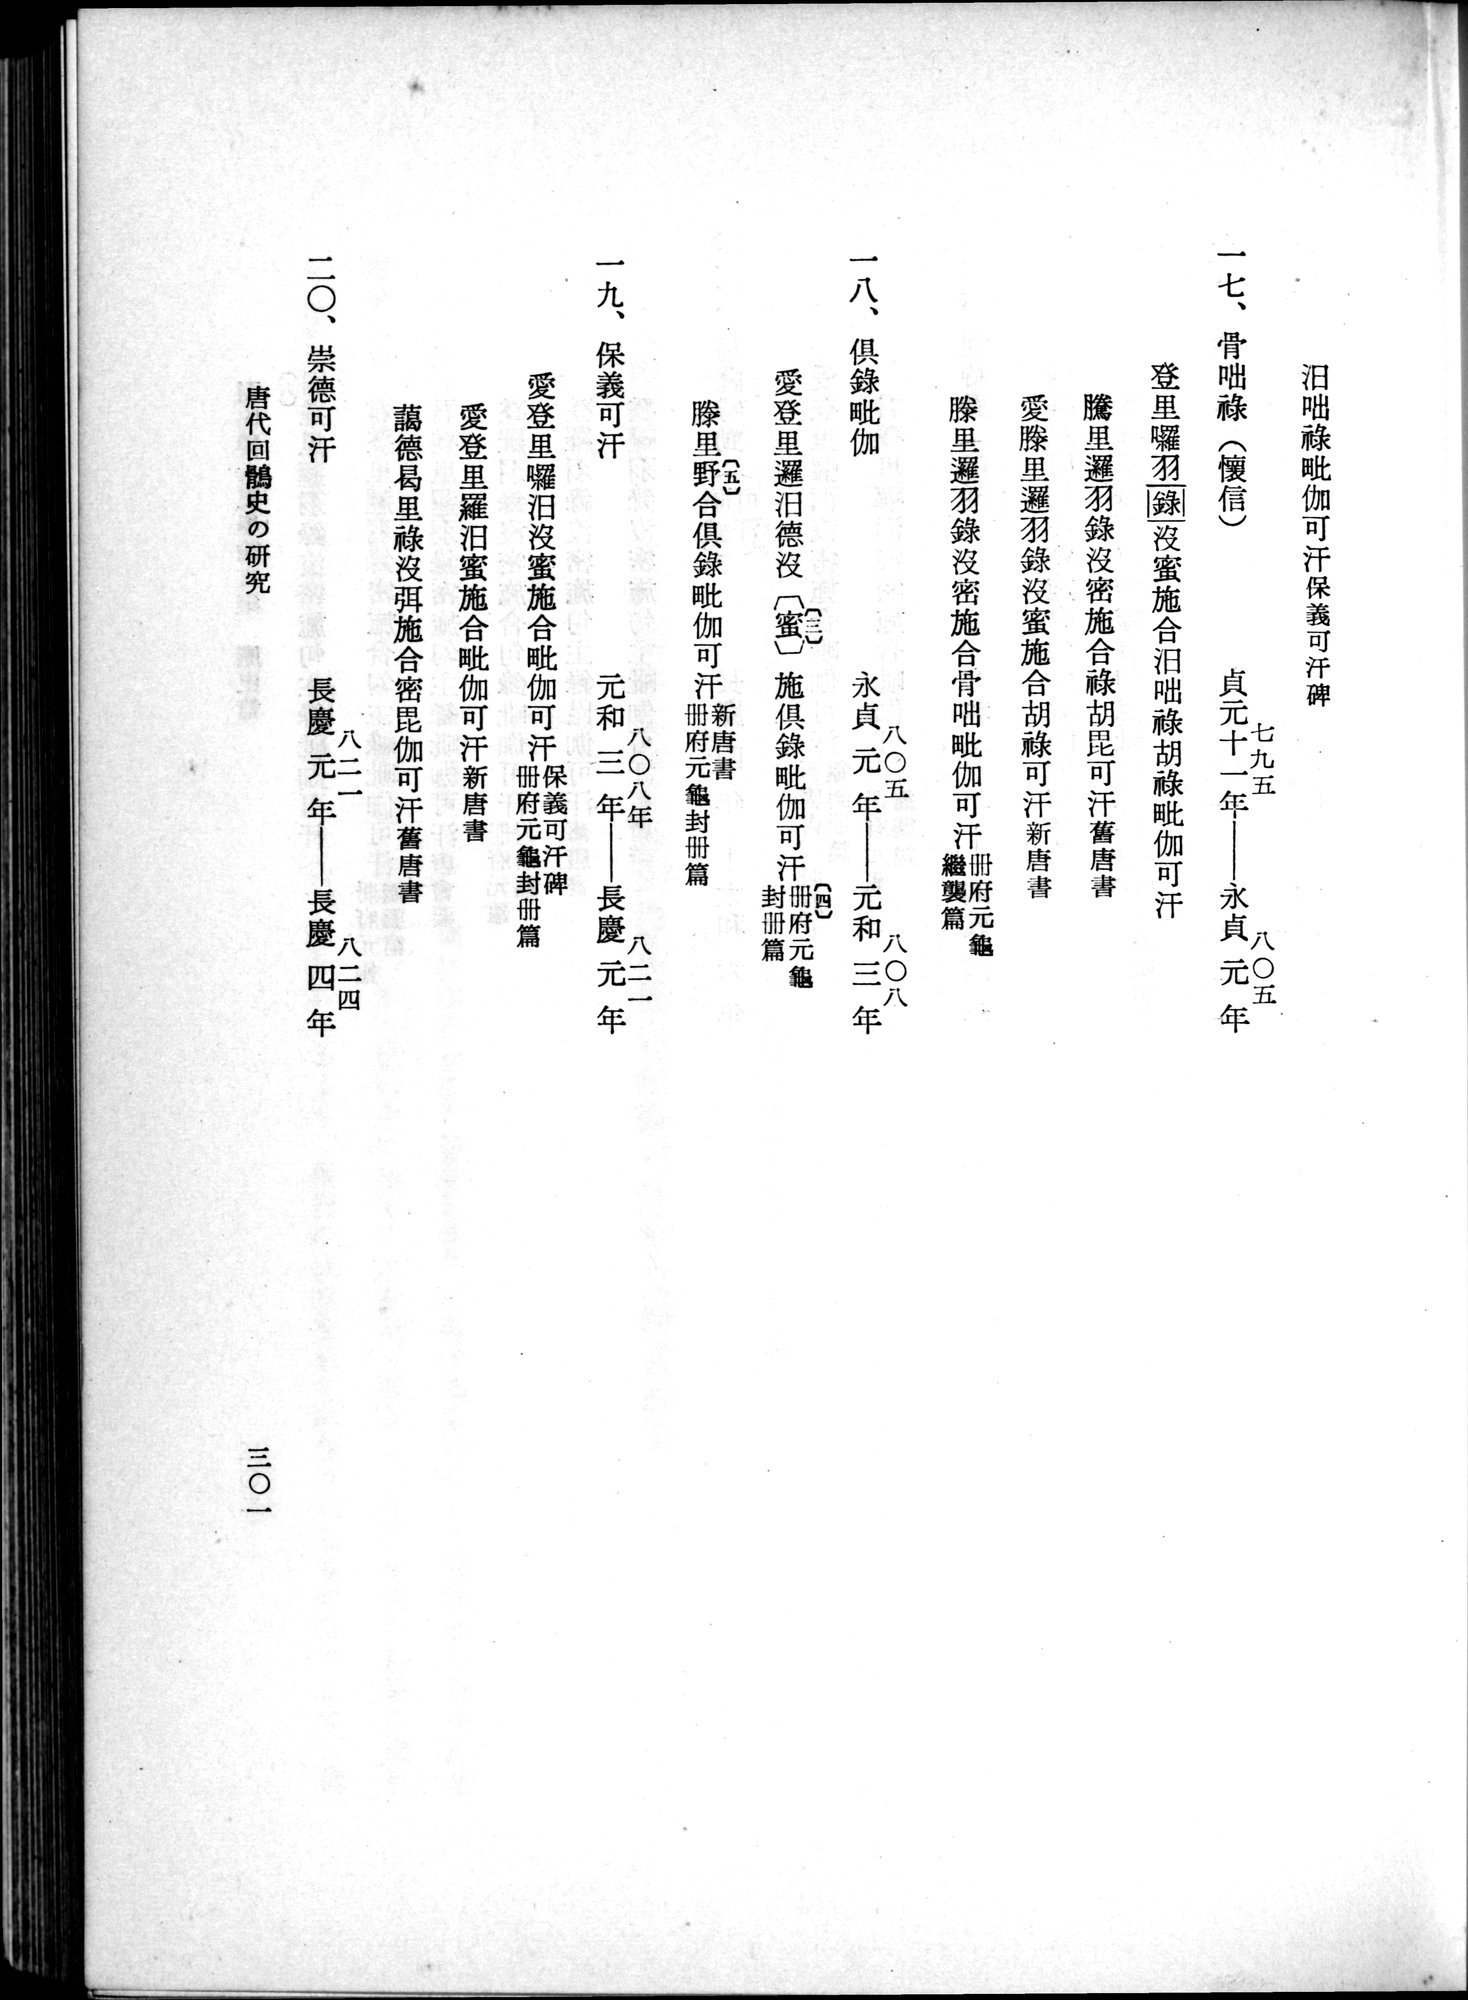 羽田博士史学論文集 : vol.1 / Page 339 (Grayscale High Resolution Image)